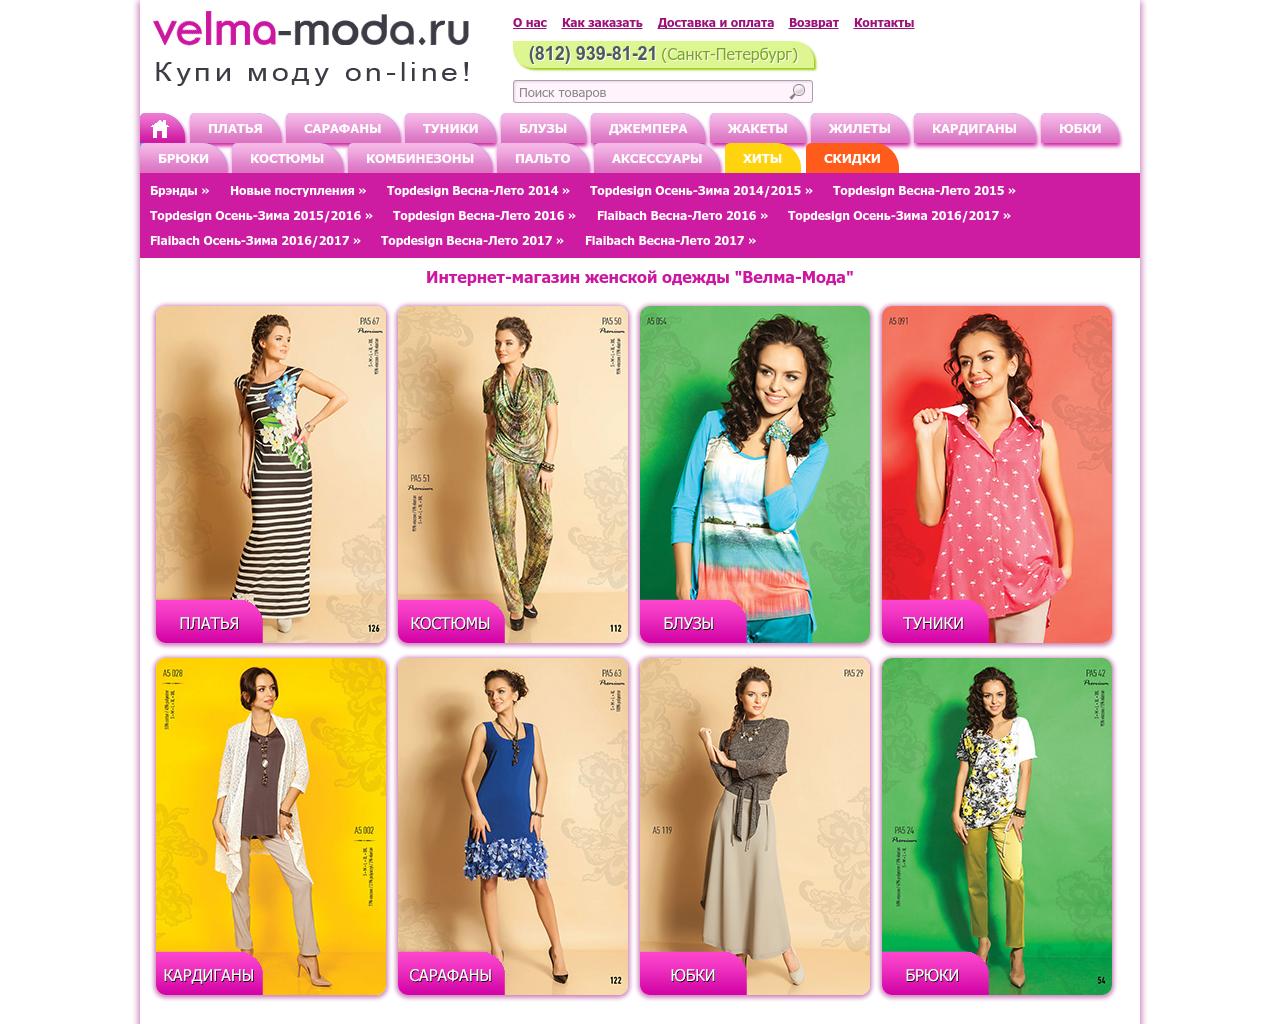 Изображение сайта velma-moda.ru в разрешении 1280x1024